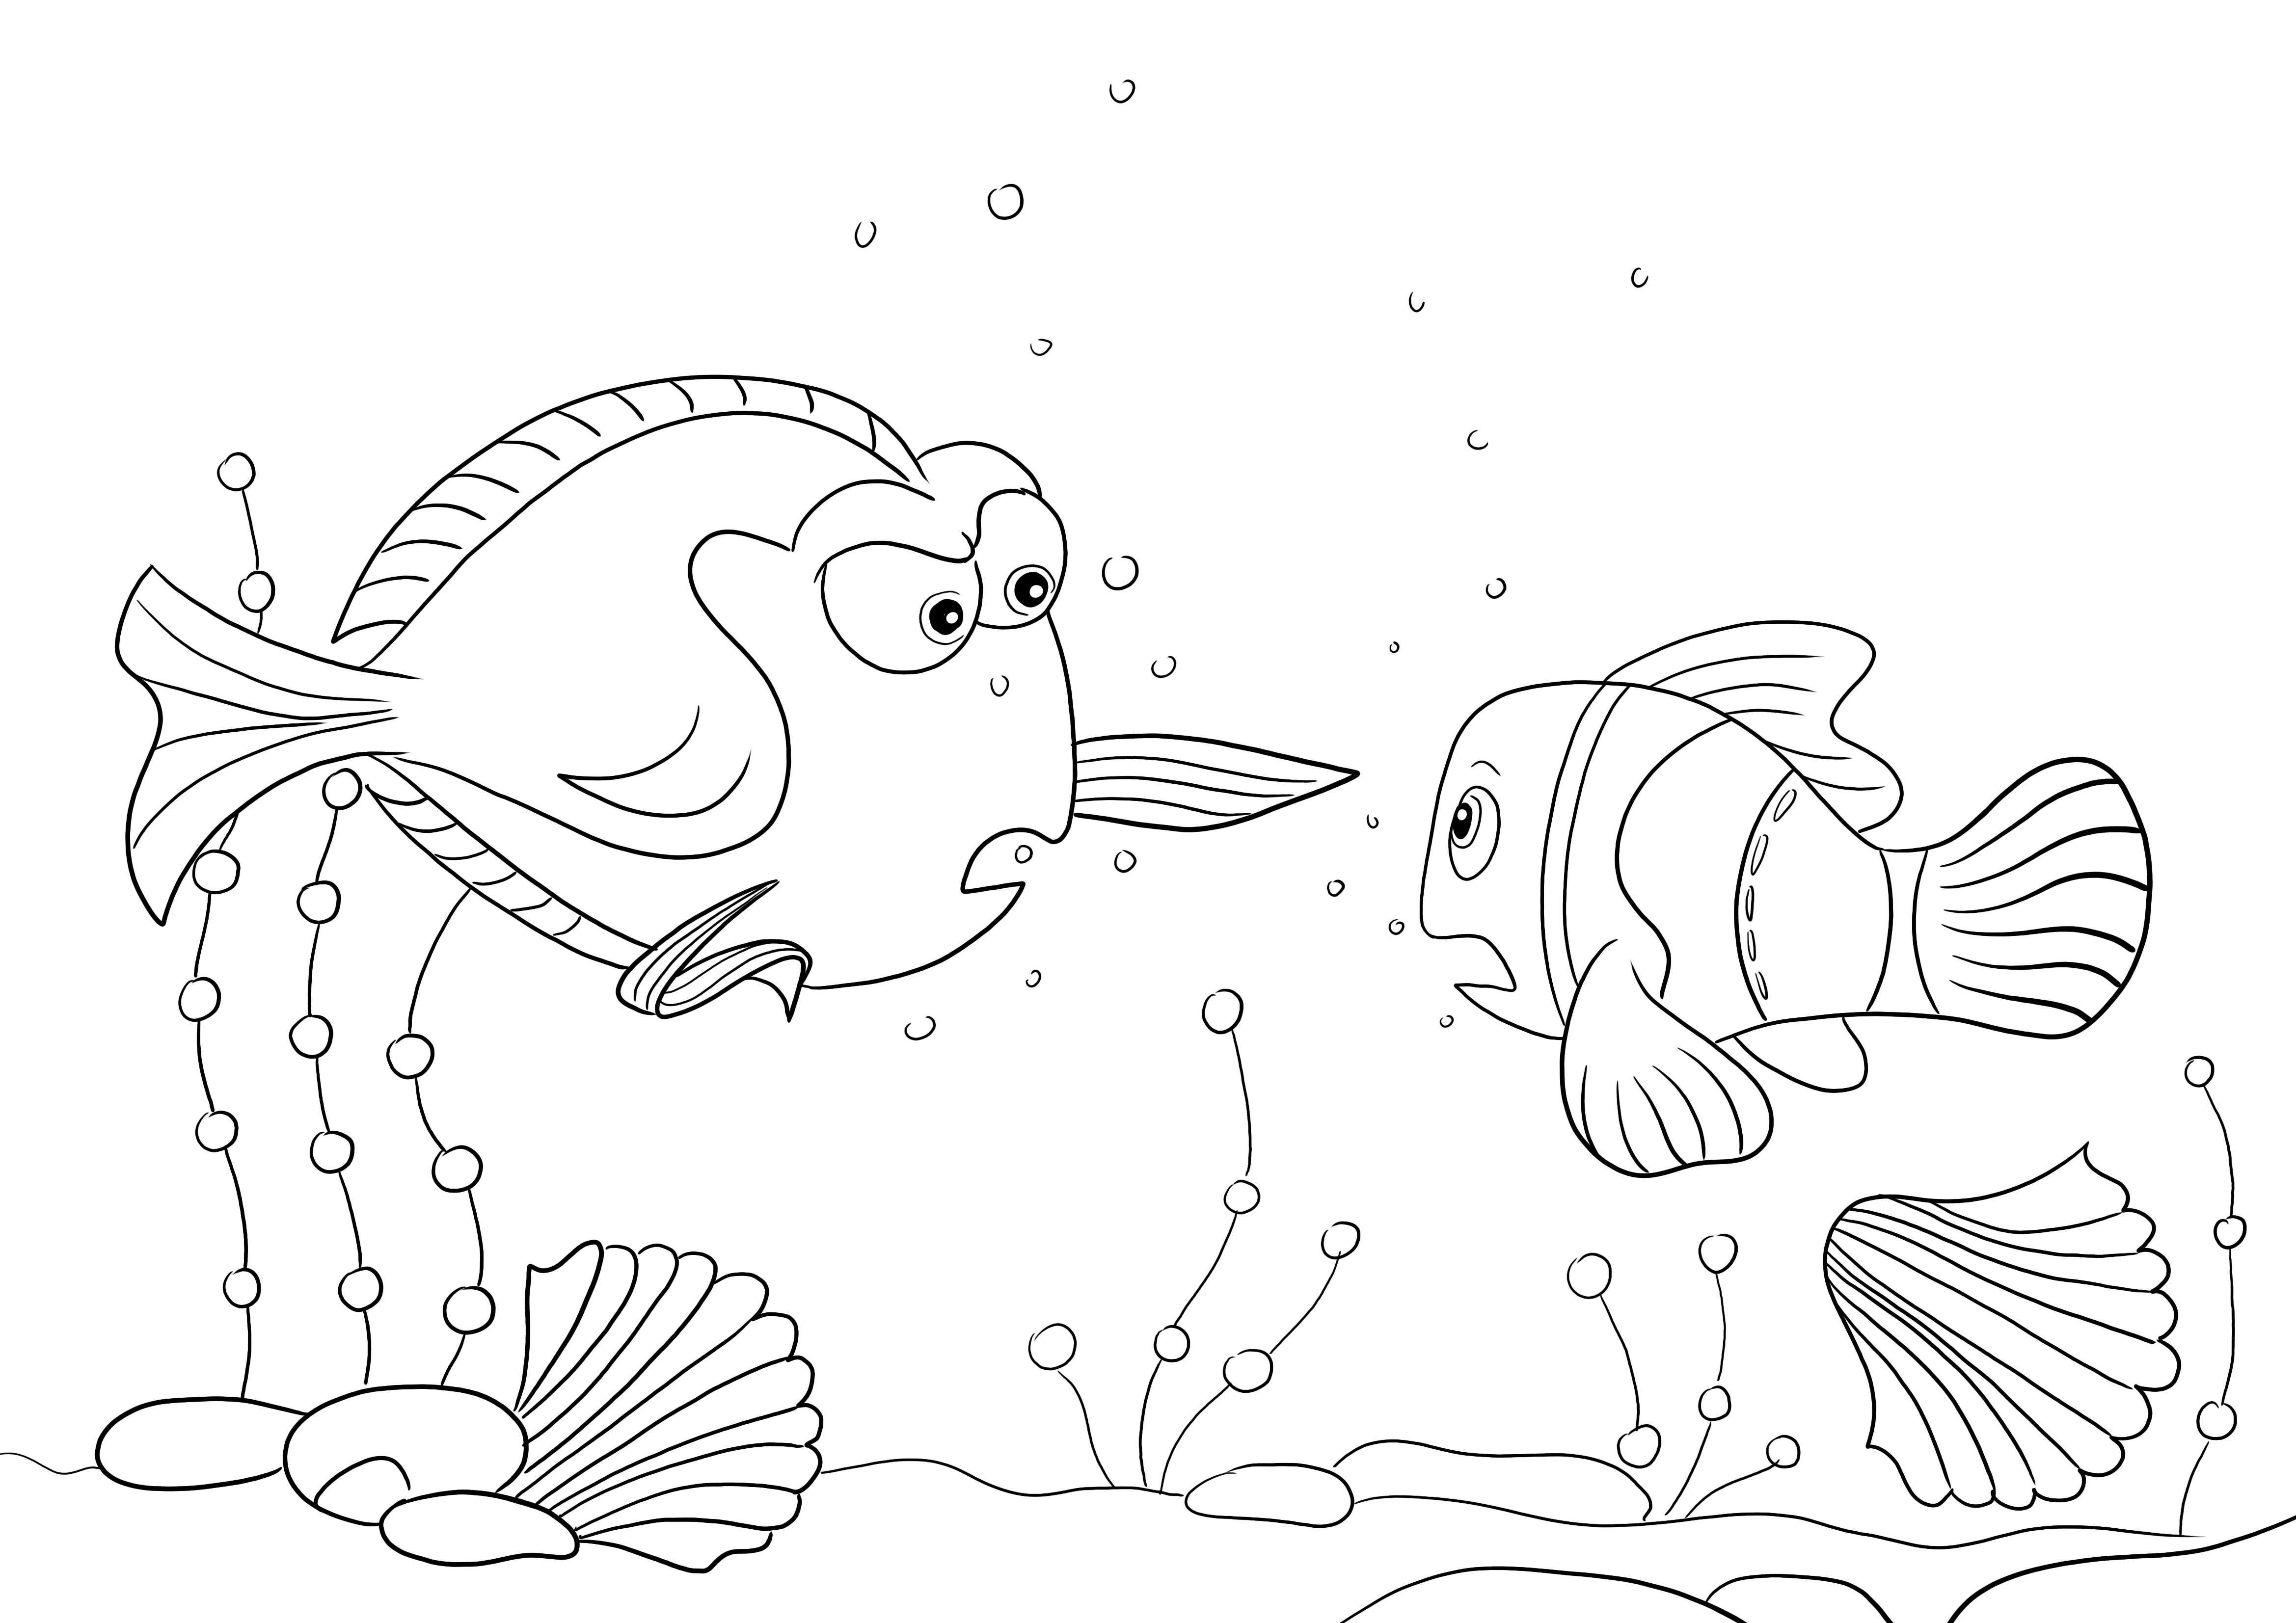 Dibujo para colorear gratis de Charlie y Nemo para que los niños descarguen y coloreen con diversión